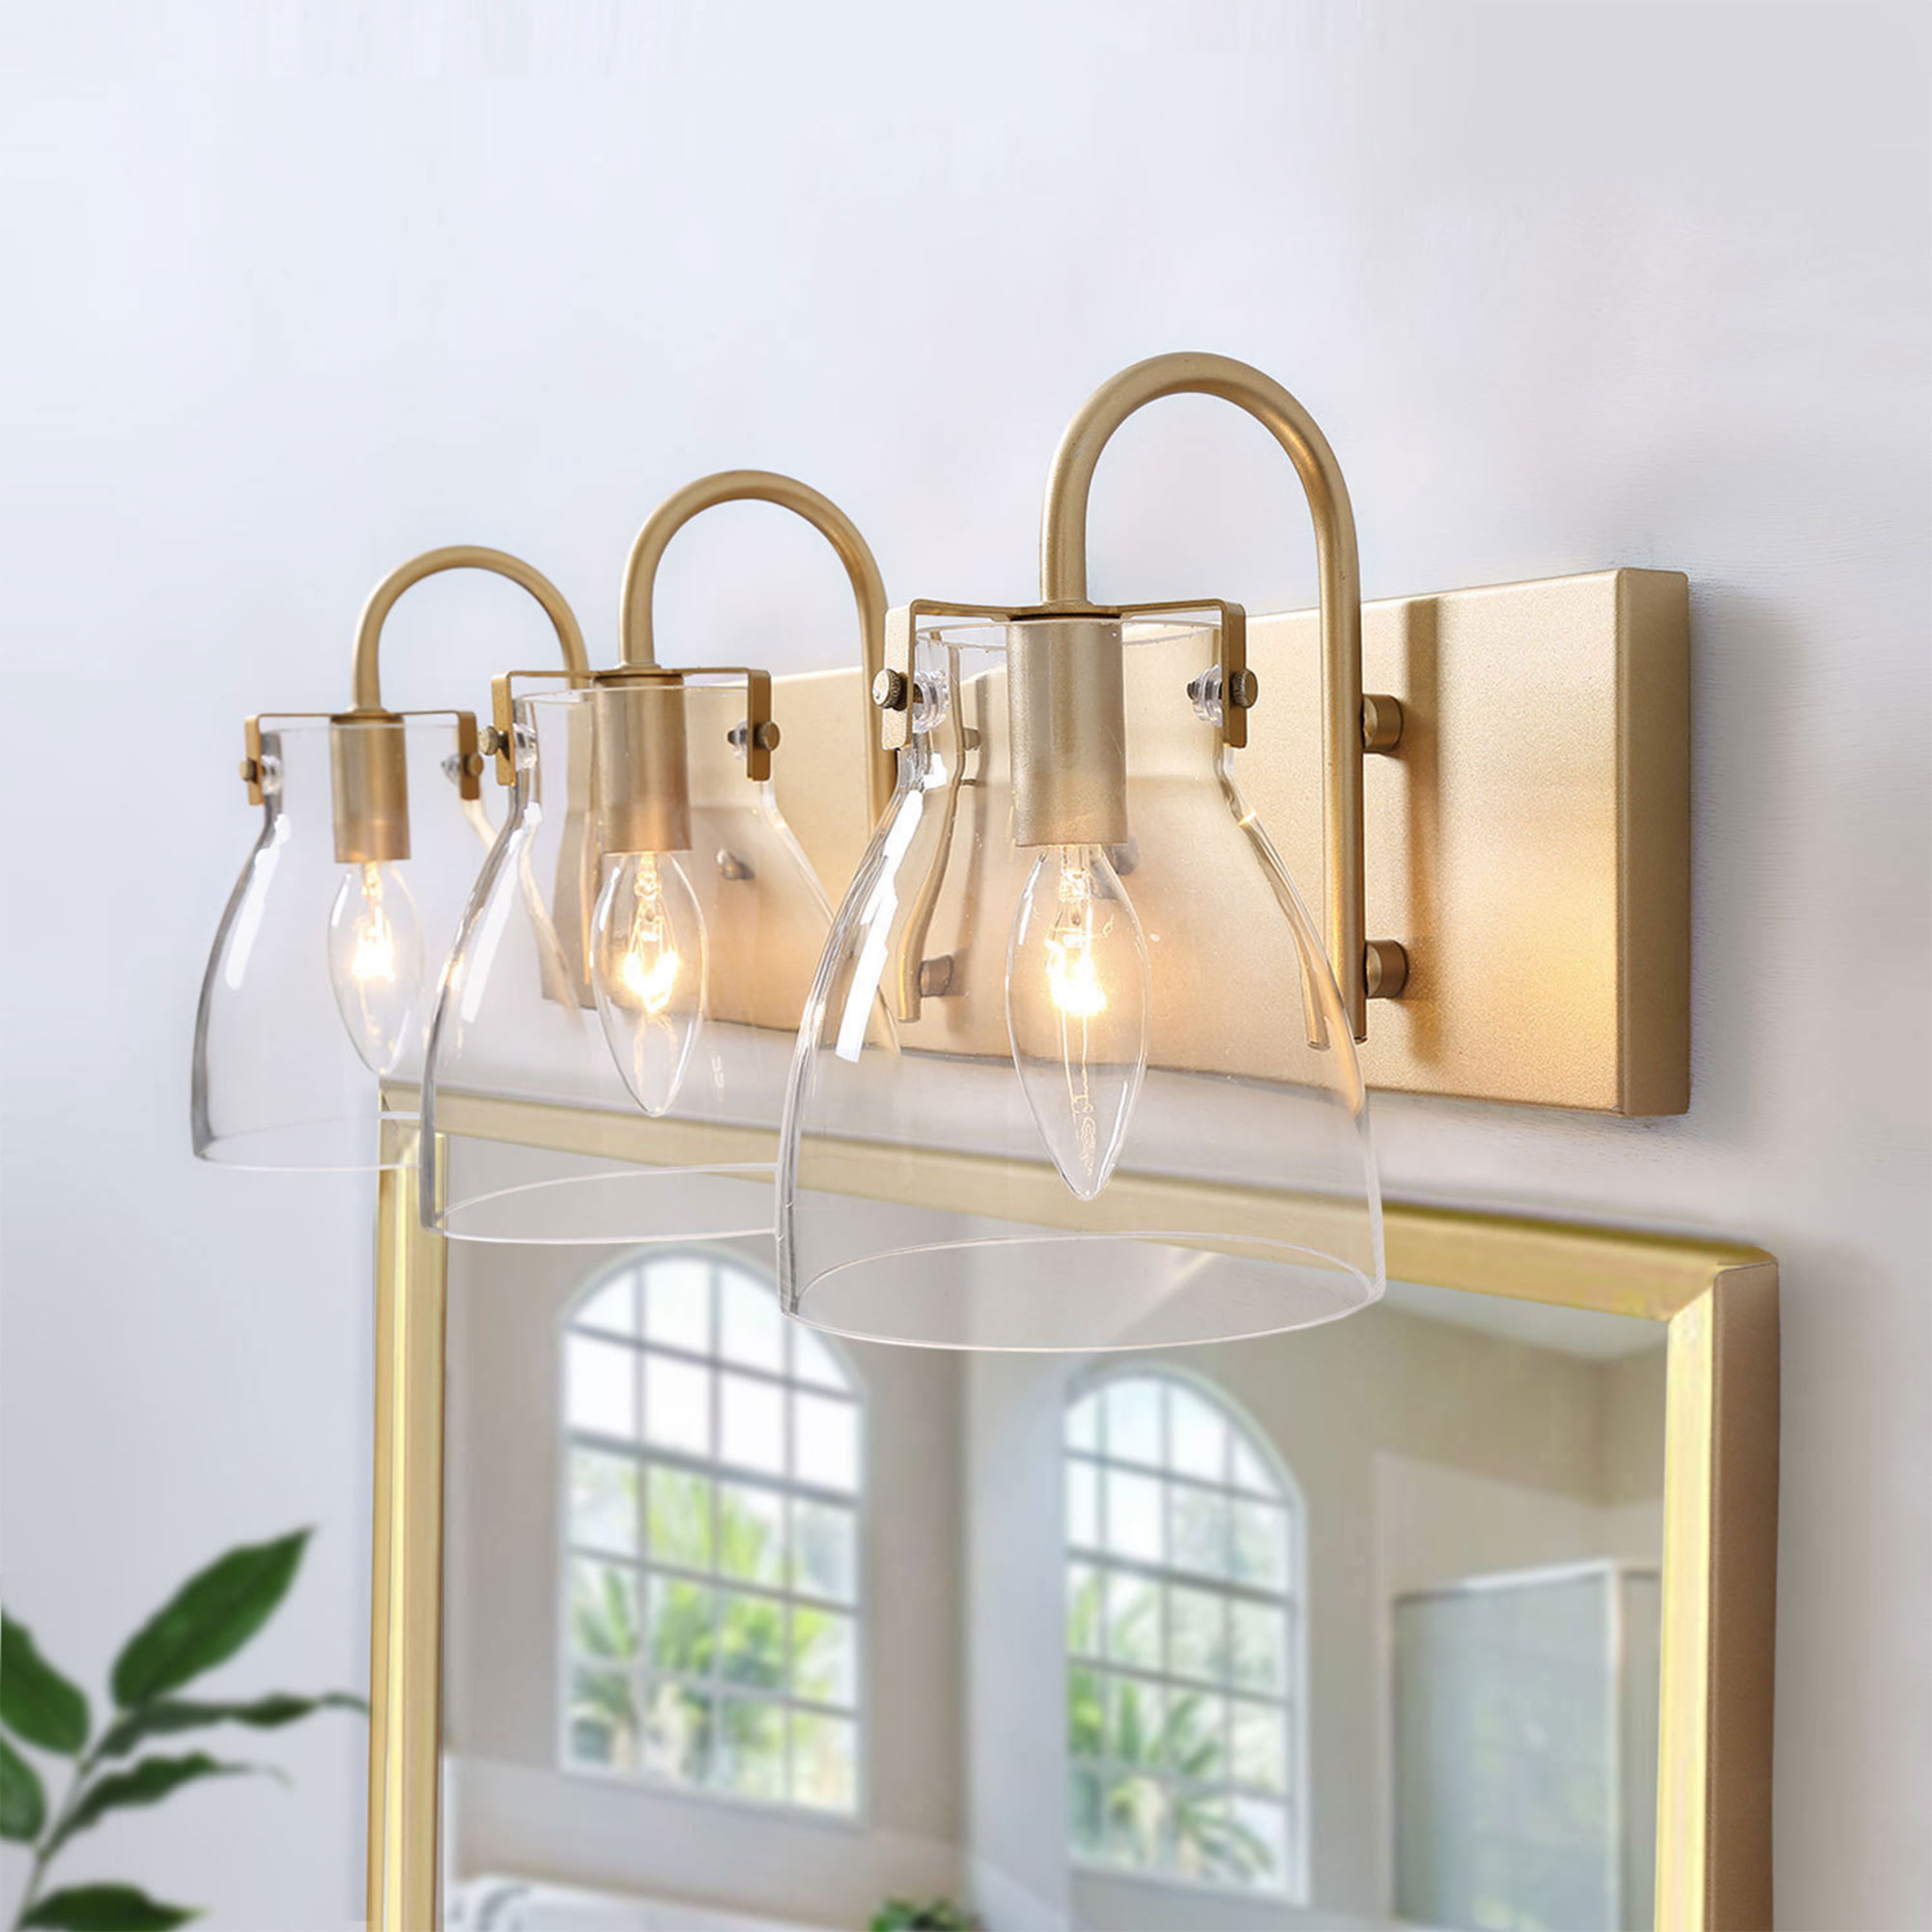 LNC Bathroom Light Fixtures, Gold Vanity Light Fixture with Glass